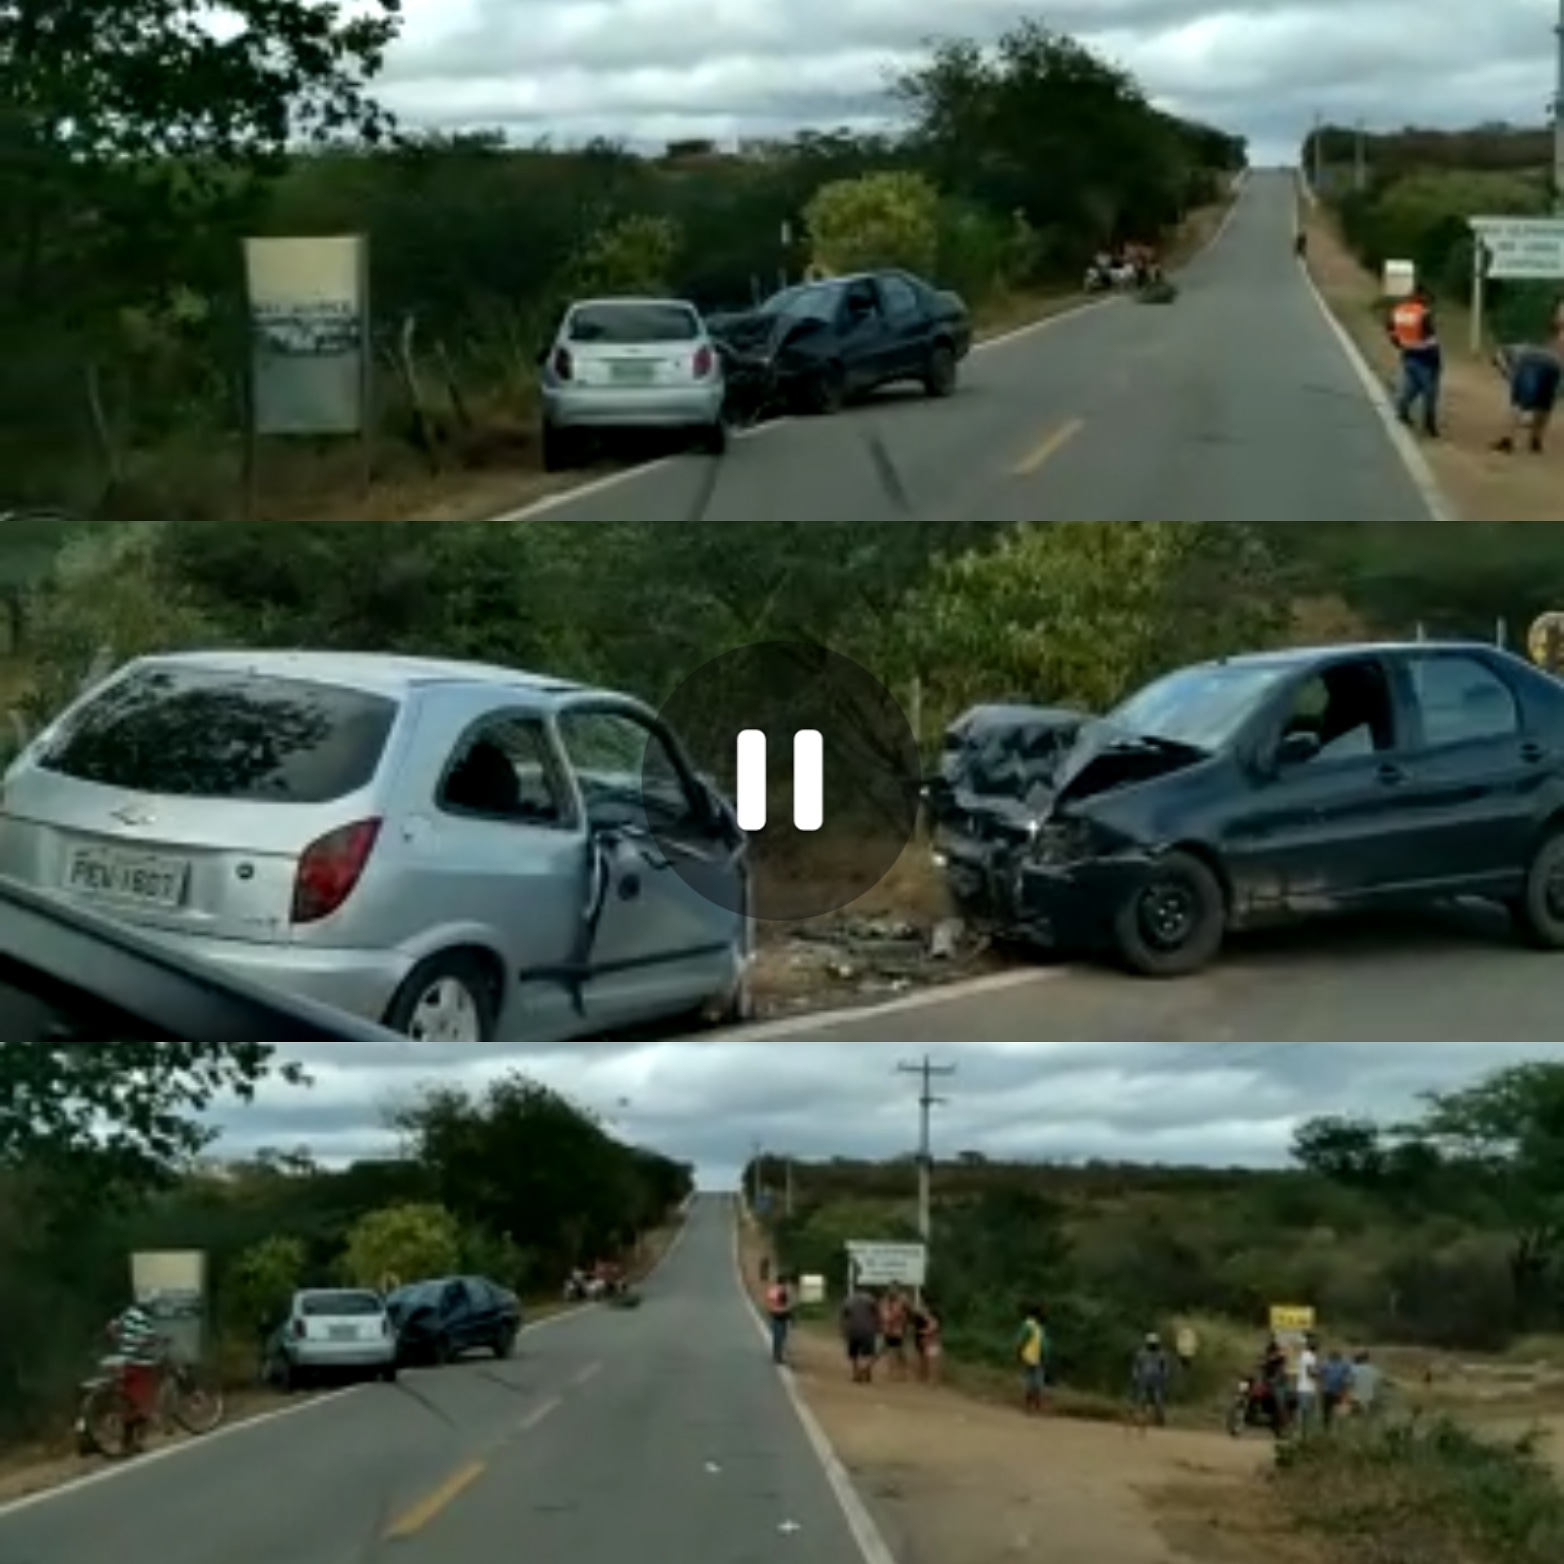 IMG_20210805_161910_427 Cinco pessoas ficam feridas após colisão frontal de carros na BR-110 em Monteiro